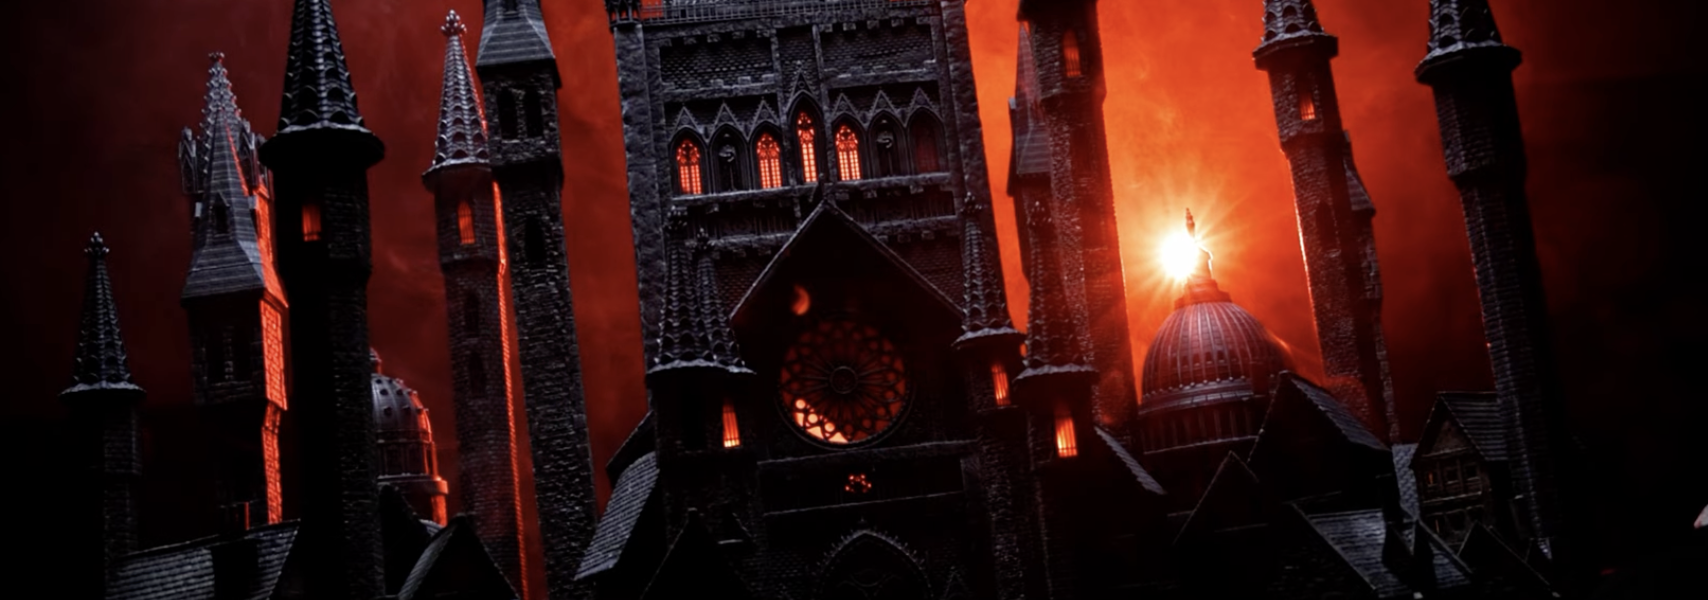 Bygg en gotisk fantasistad på 20 dagar